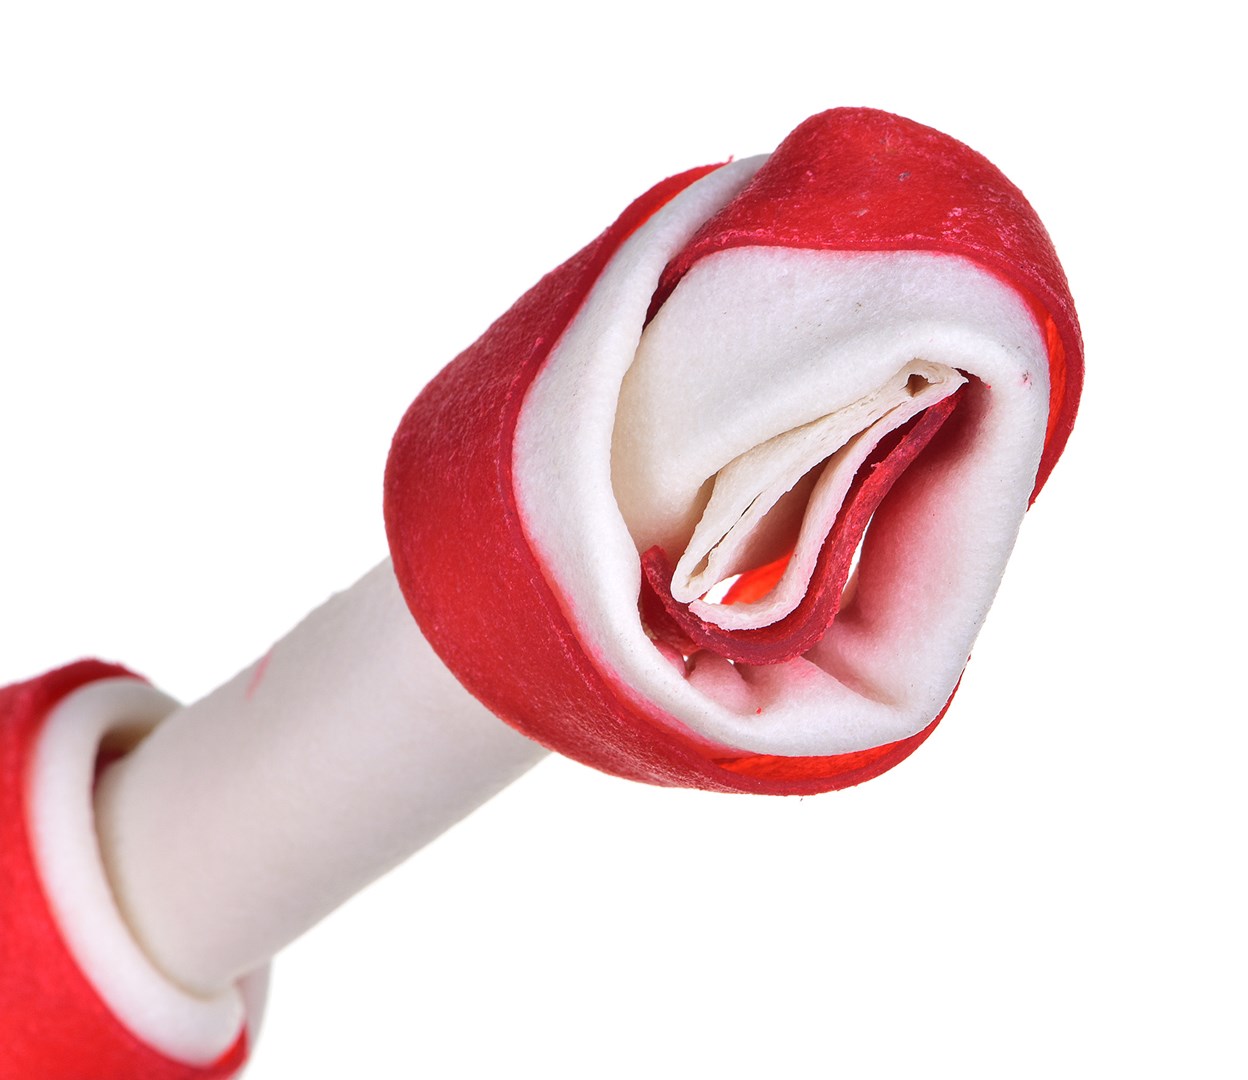 MACED Kost vázaná se slaninou - žvýkací pomůcka pro psy - 16 cm